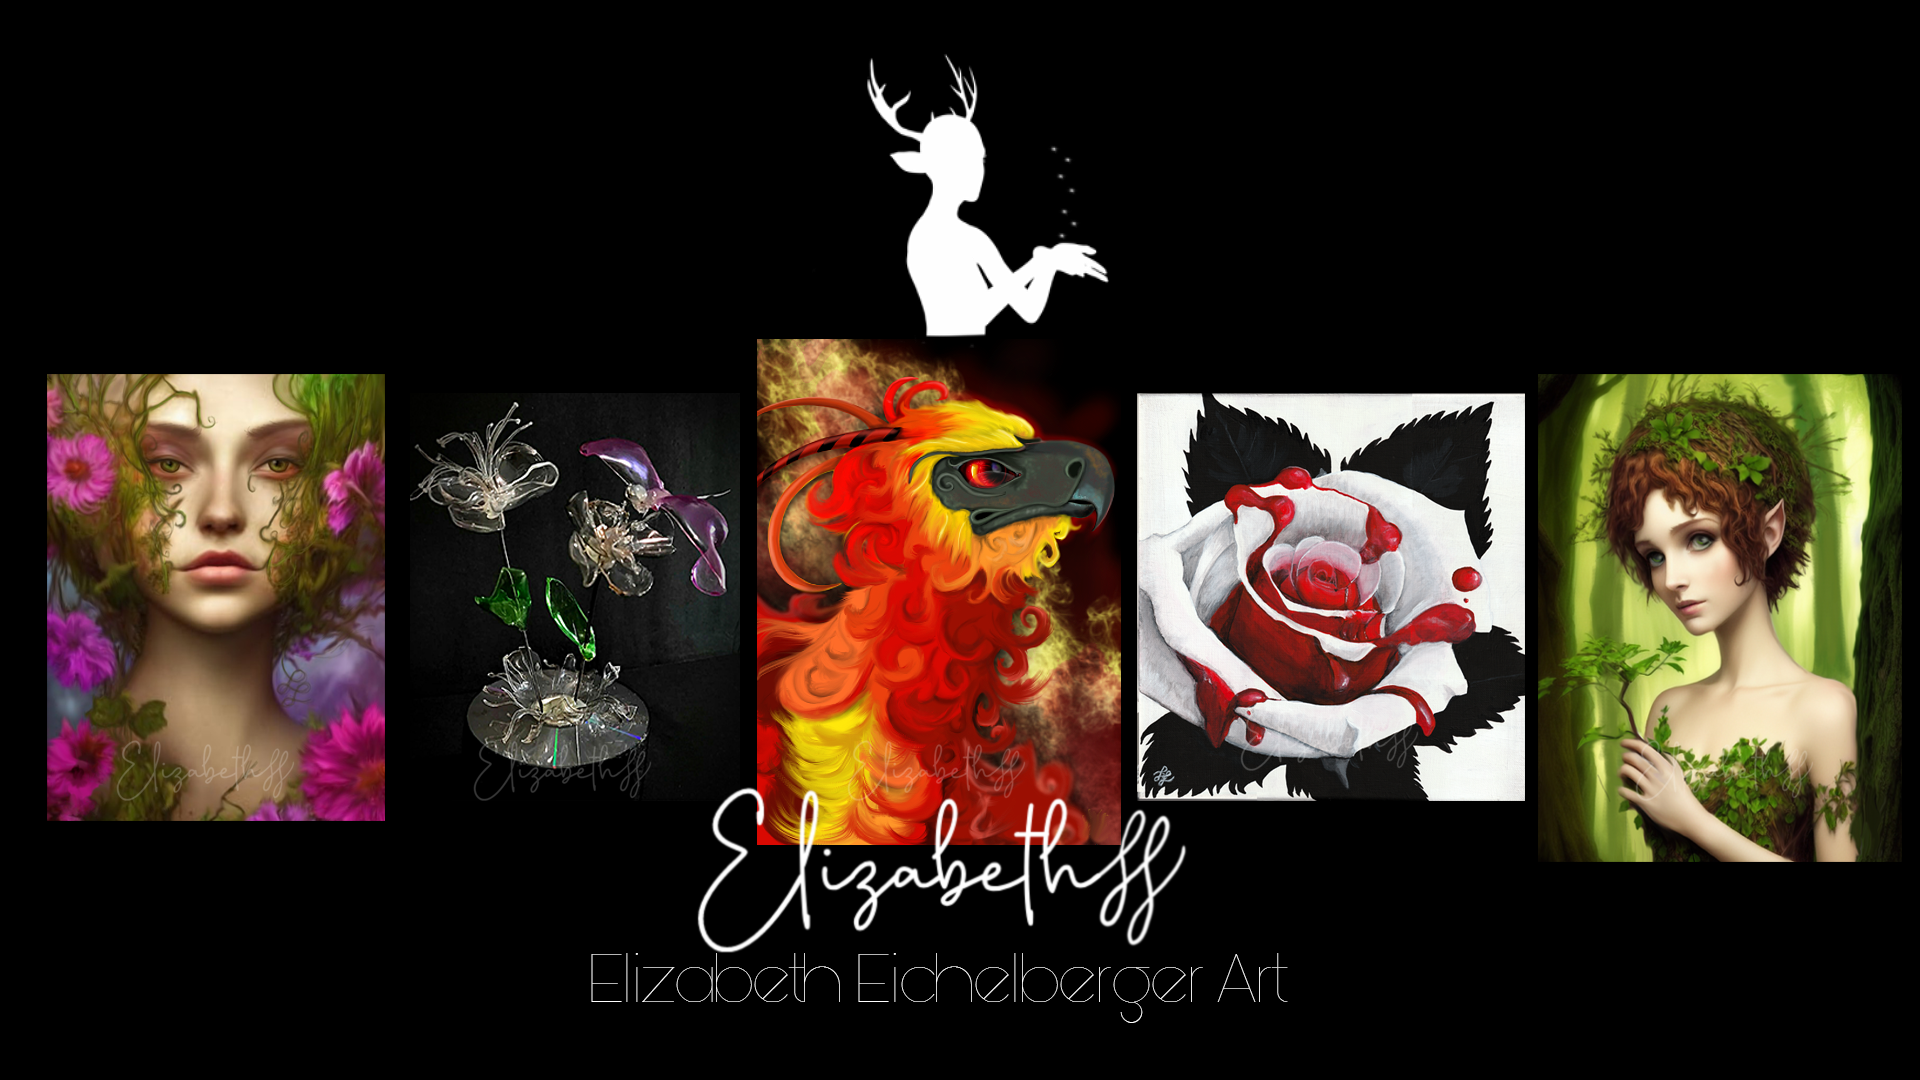 Welcome to Elizabeth Eichelberger Art